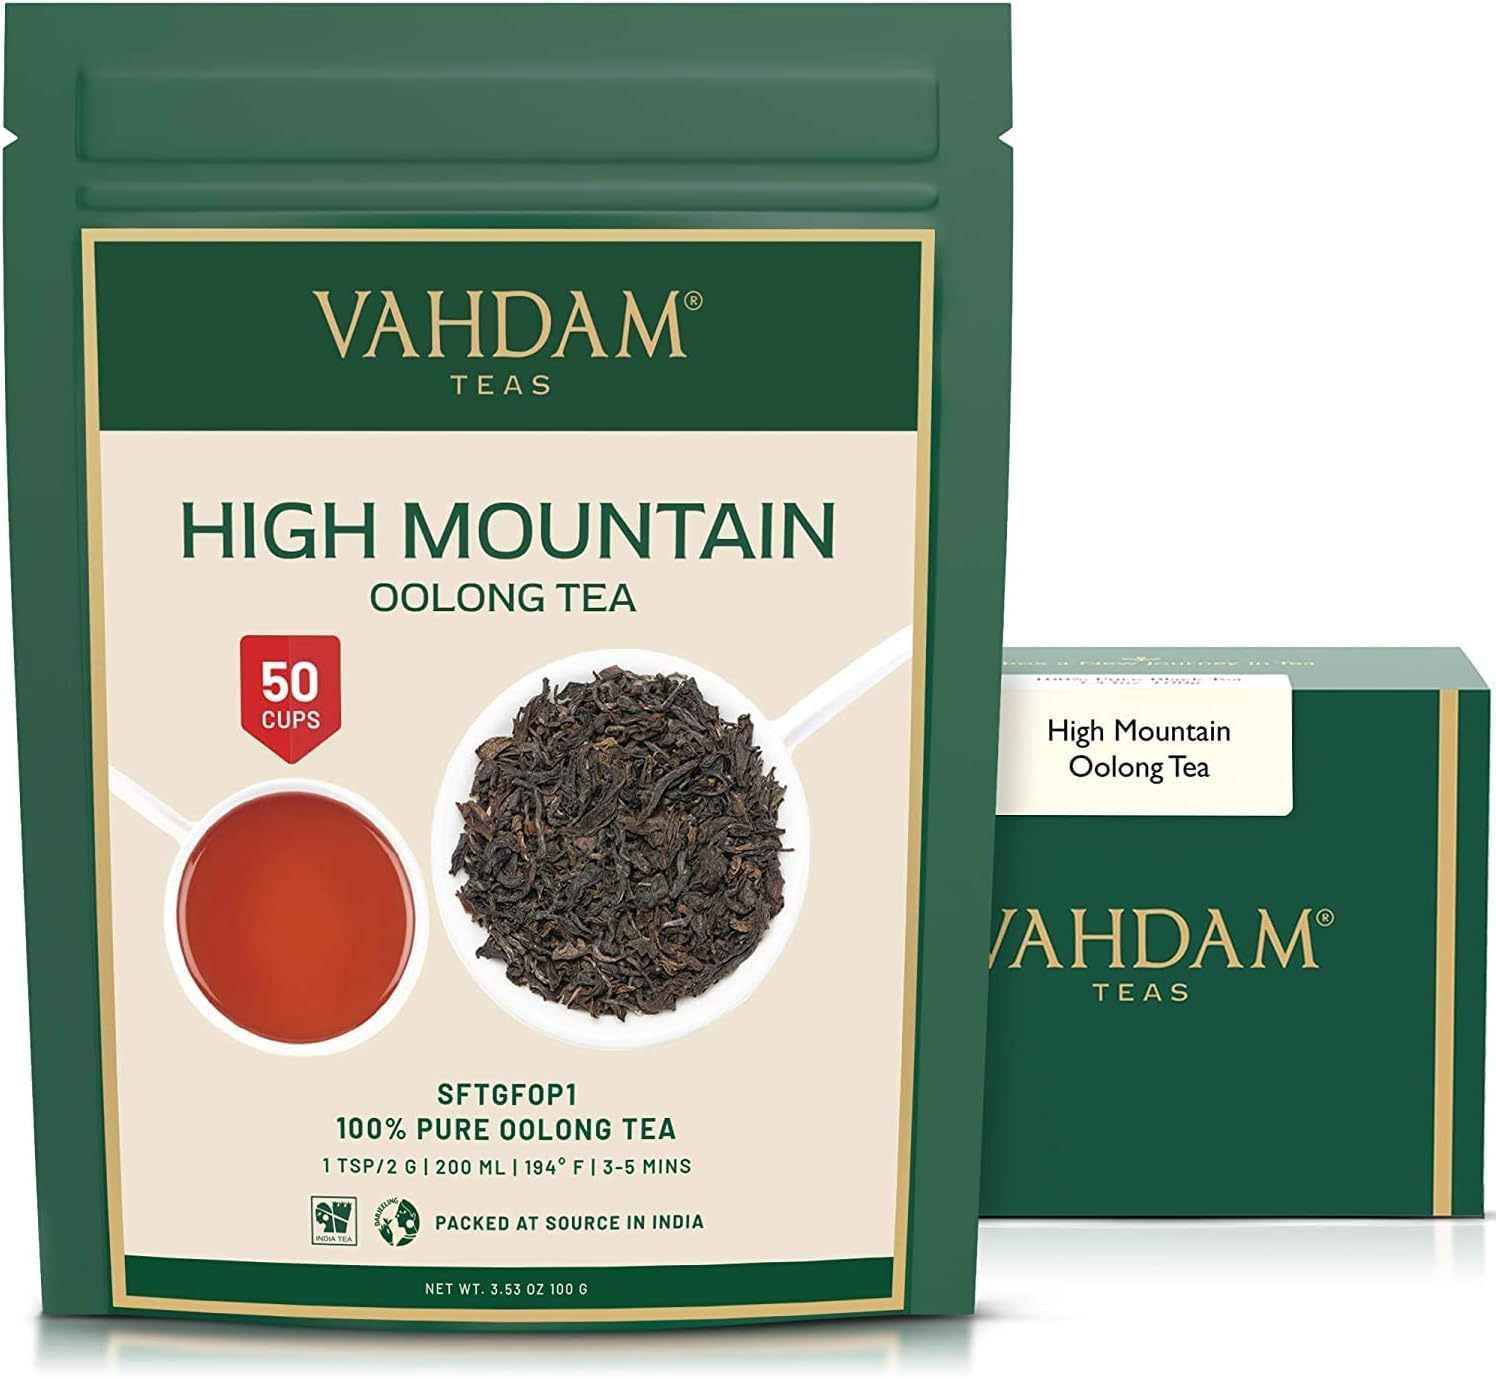 VAHDAM Himalayan Oolong Tea (50 cups) |...